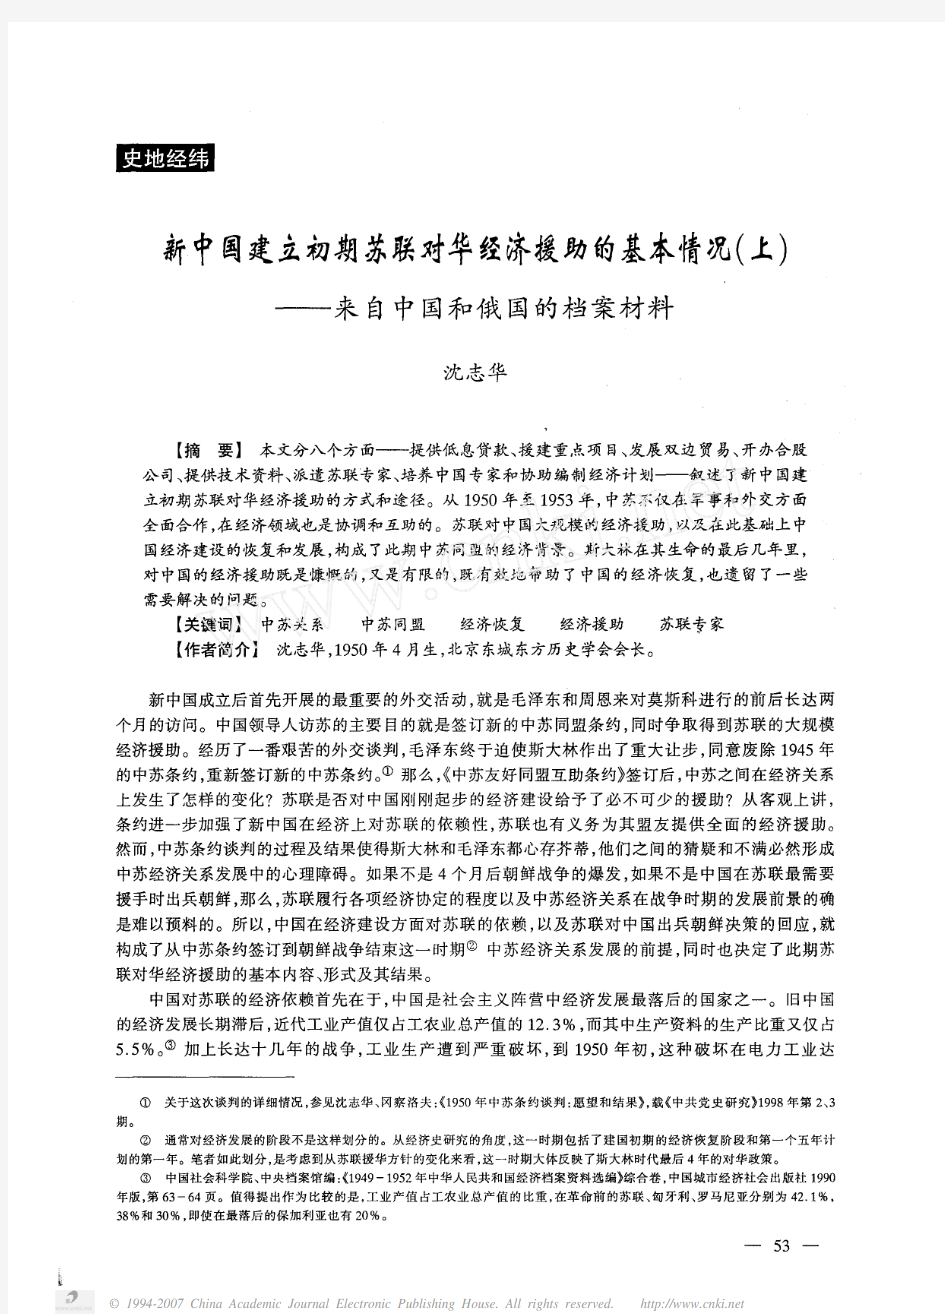 新中国建立初期苏联对华经济援助的基本情况_上_来自中国和俄国的档案材料